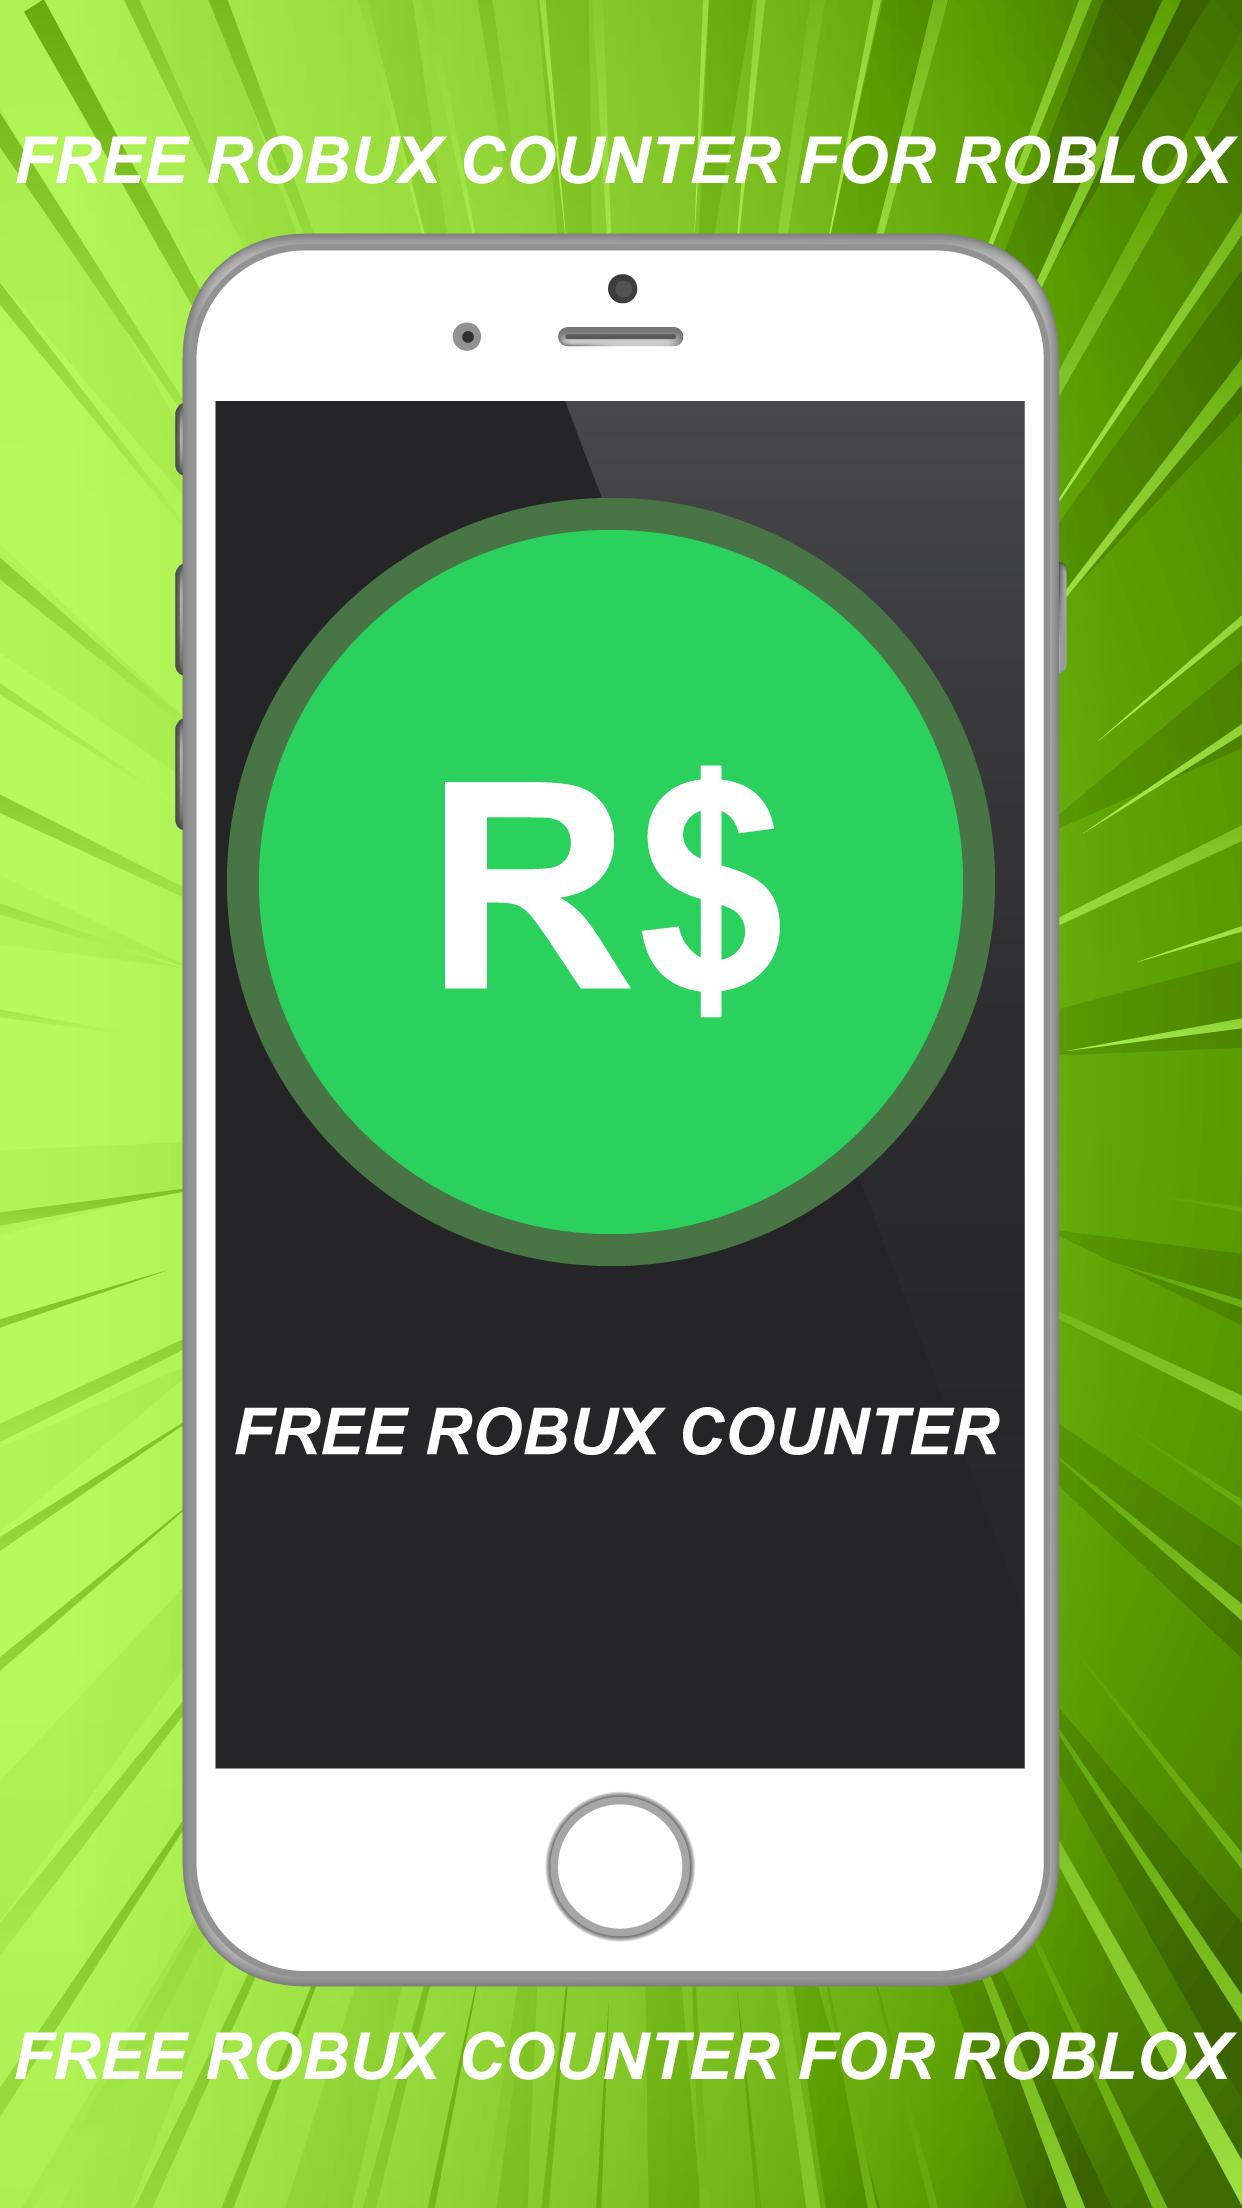 Robux Calc Gratis Para Roblox 2020 For Android Apk Download - como juegan ustedes roblox con robux o sin robux roblox